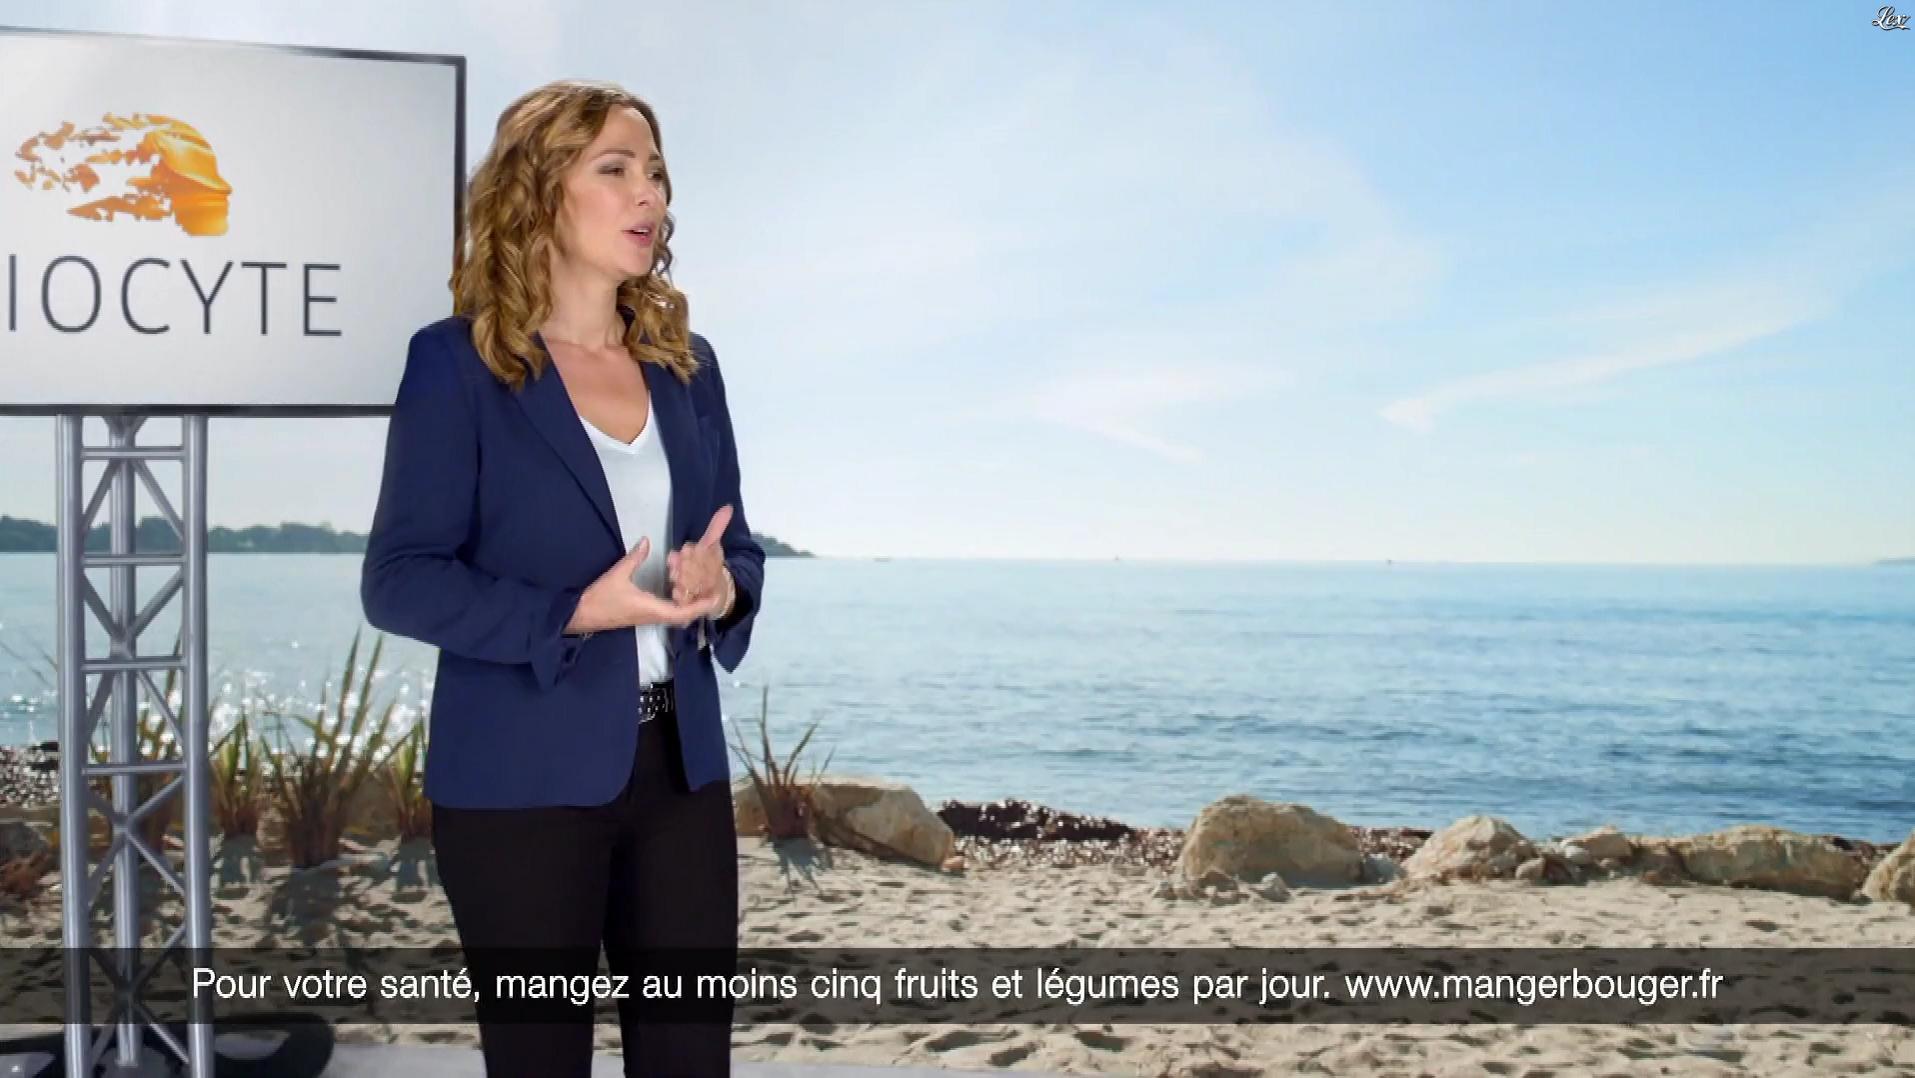 Sandrine Quétier dans une Publicité pour Biocyte. Diffusé à la télévision le 19/02/19.